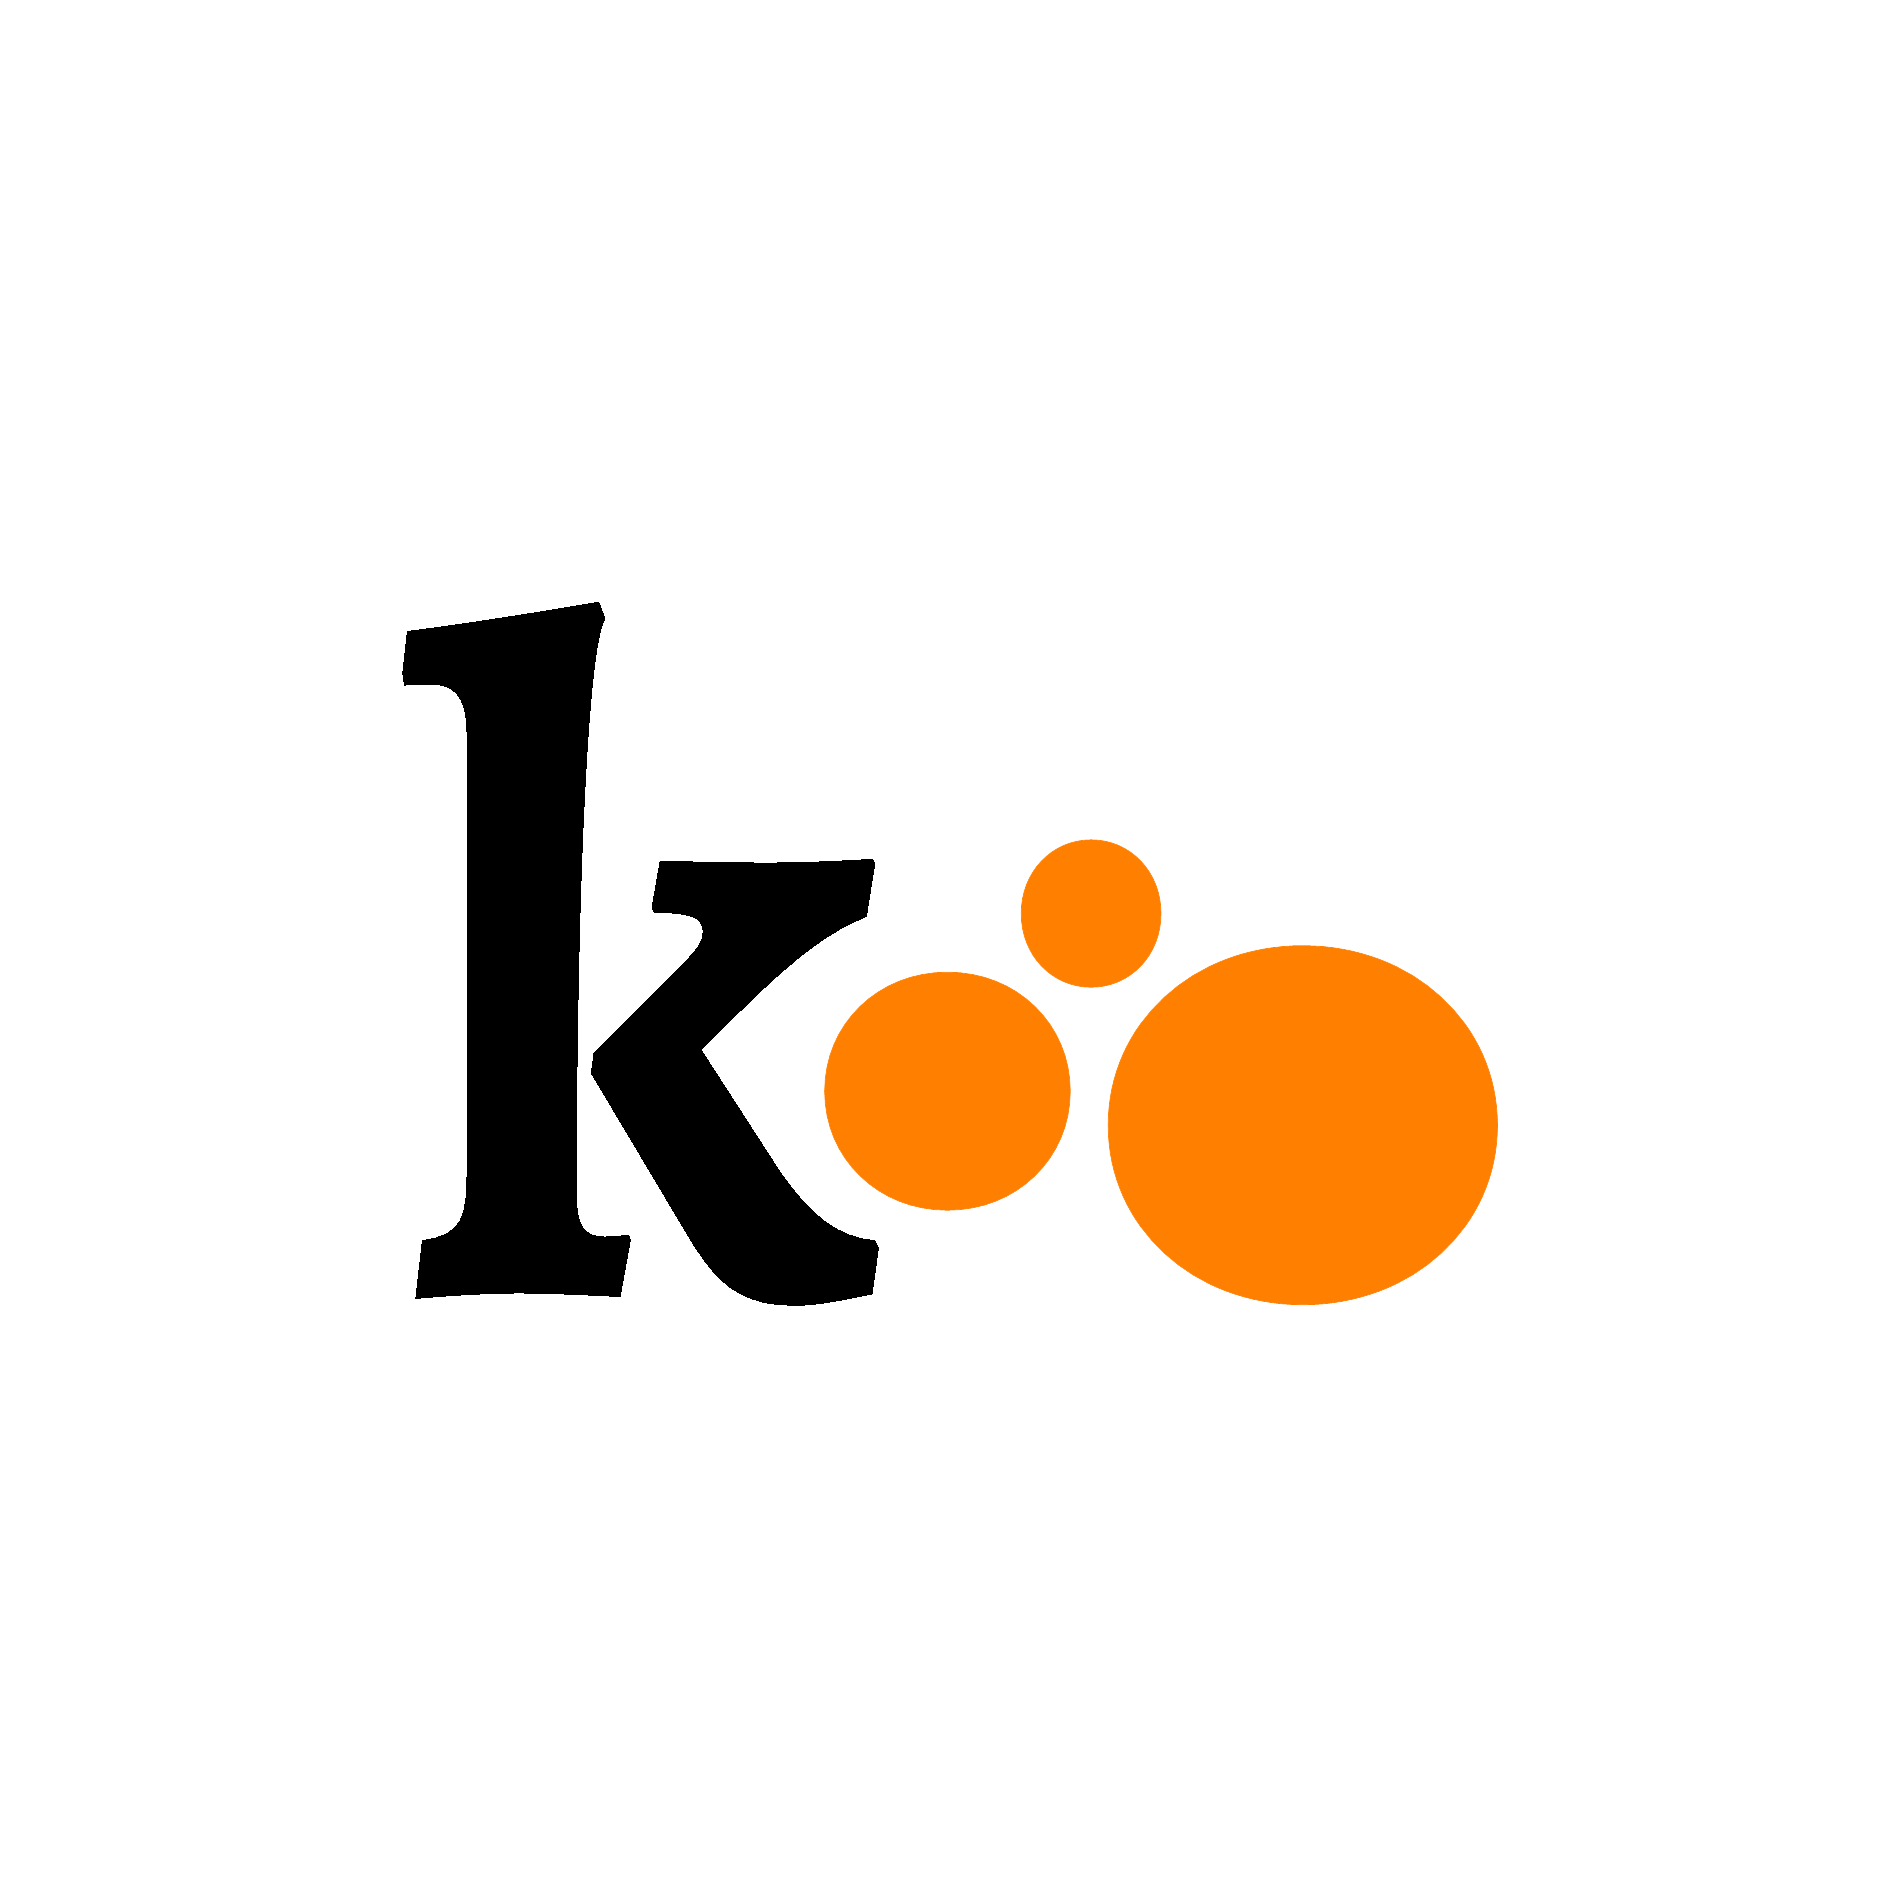 https://www.kibotek.com/wp-content/uploads/2021/06/logo_defin_png.png